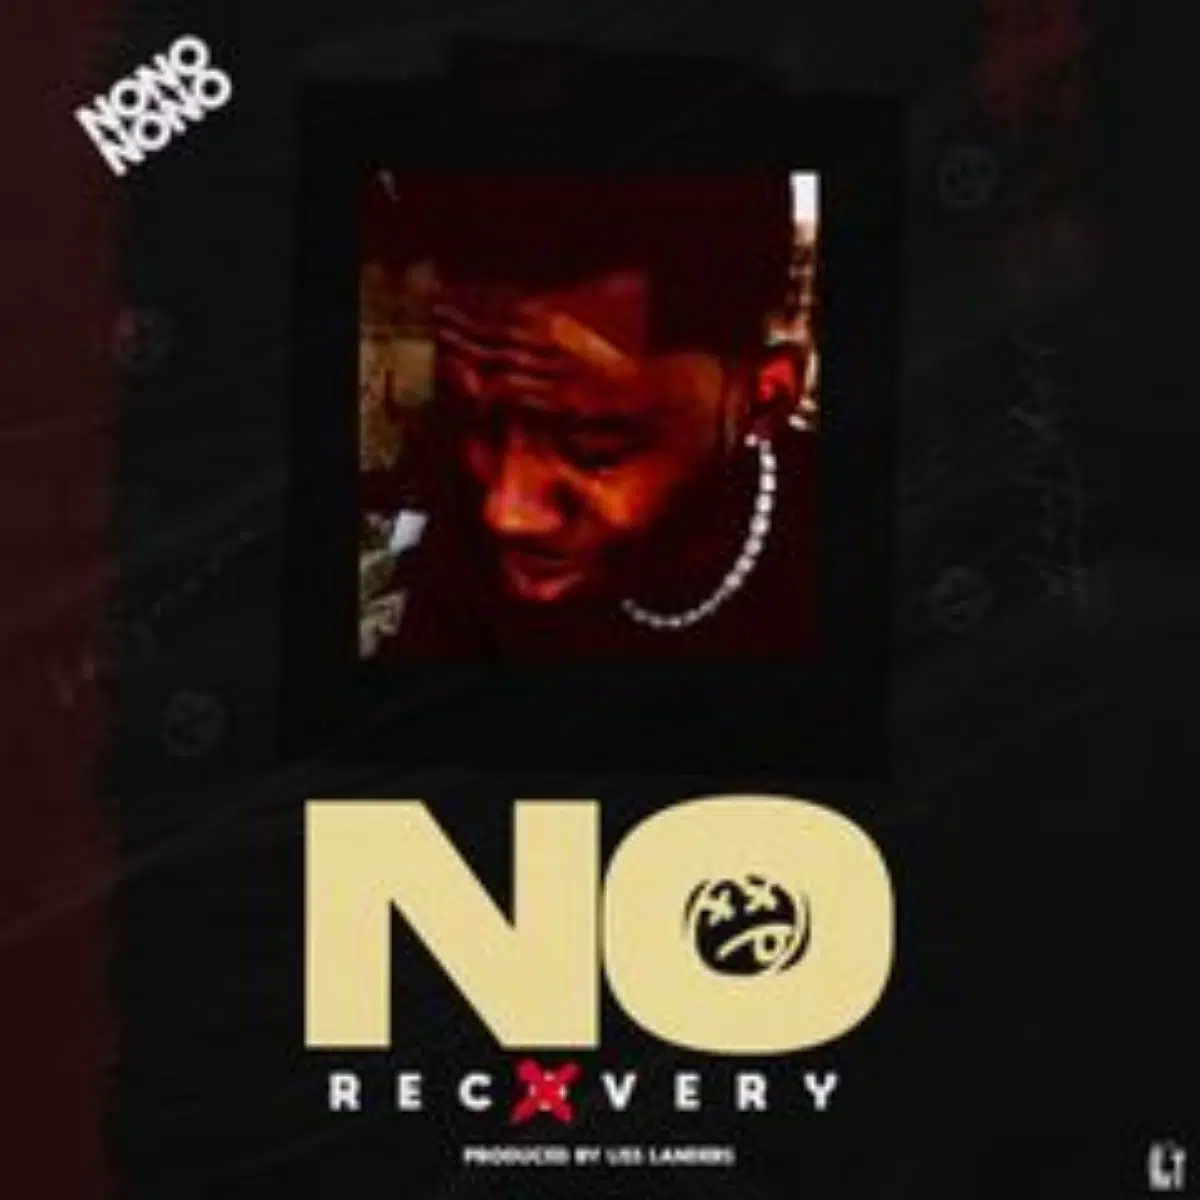 DOWNLOAD: Killa – “No Recovery” (Cinori Xo Diss) Mp3